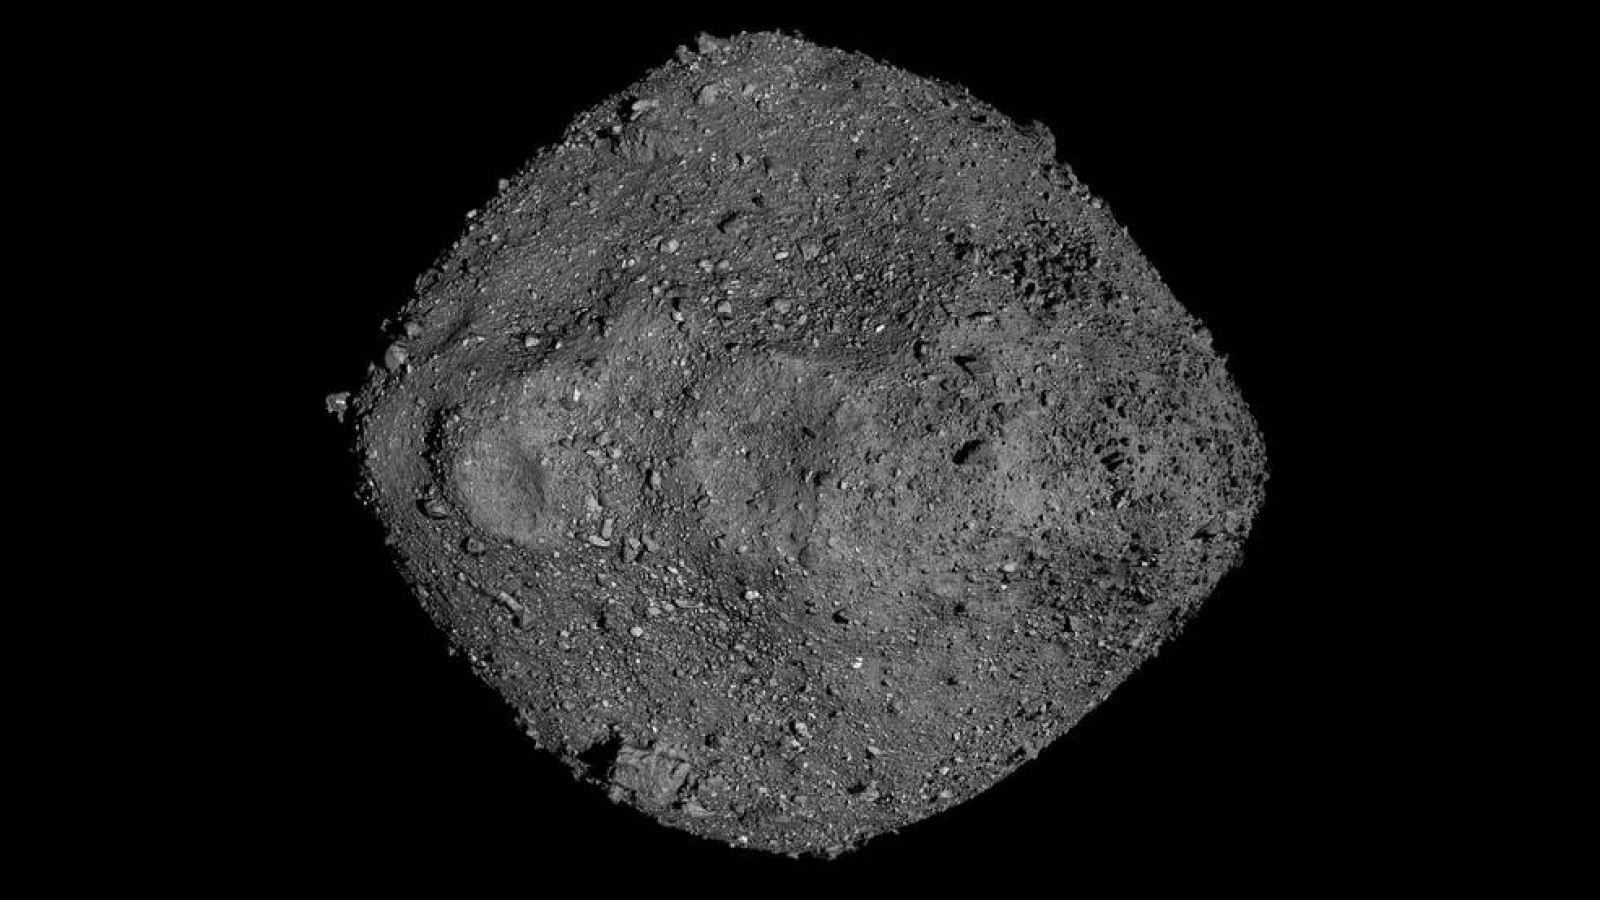 Mosaico creado a través de fotografías del asteroide Bennu